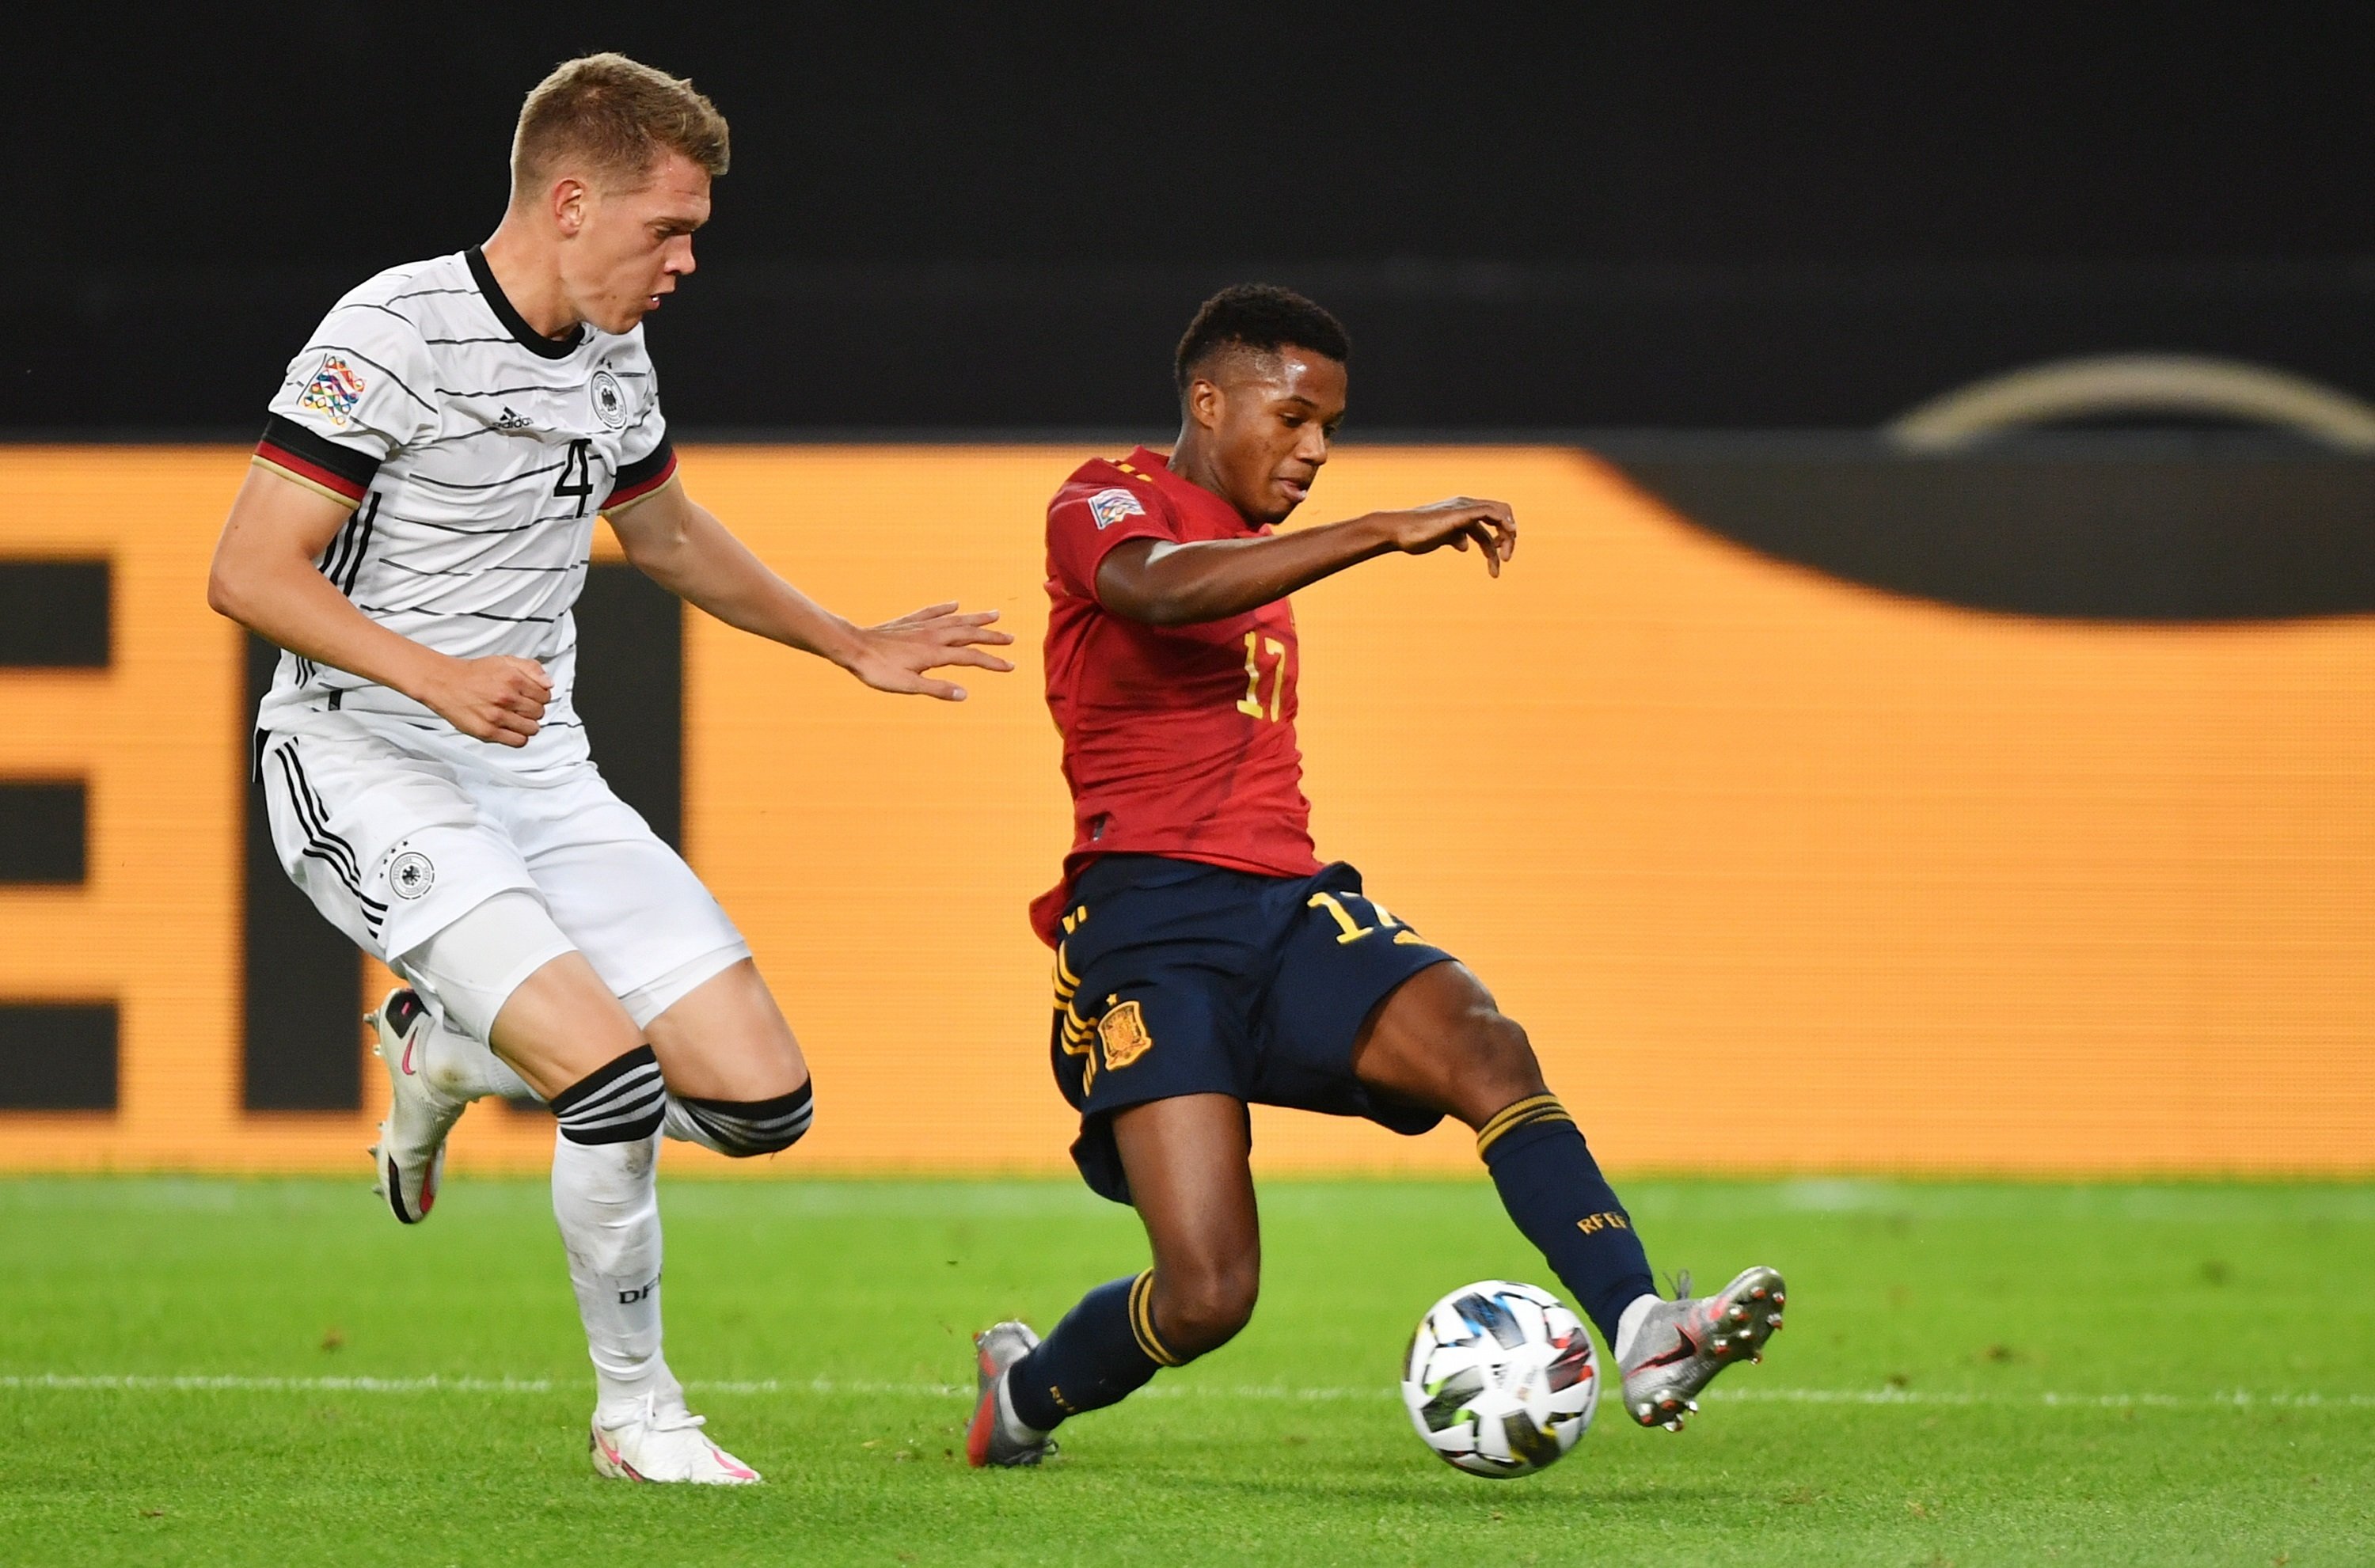 Empat d'última hora d'Espanya contra Alemanya en el debut d'Ansu Fati (1-1)